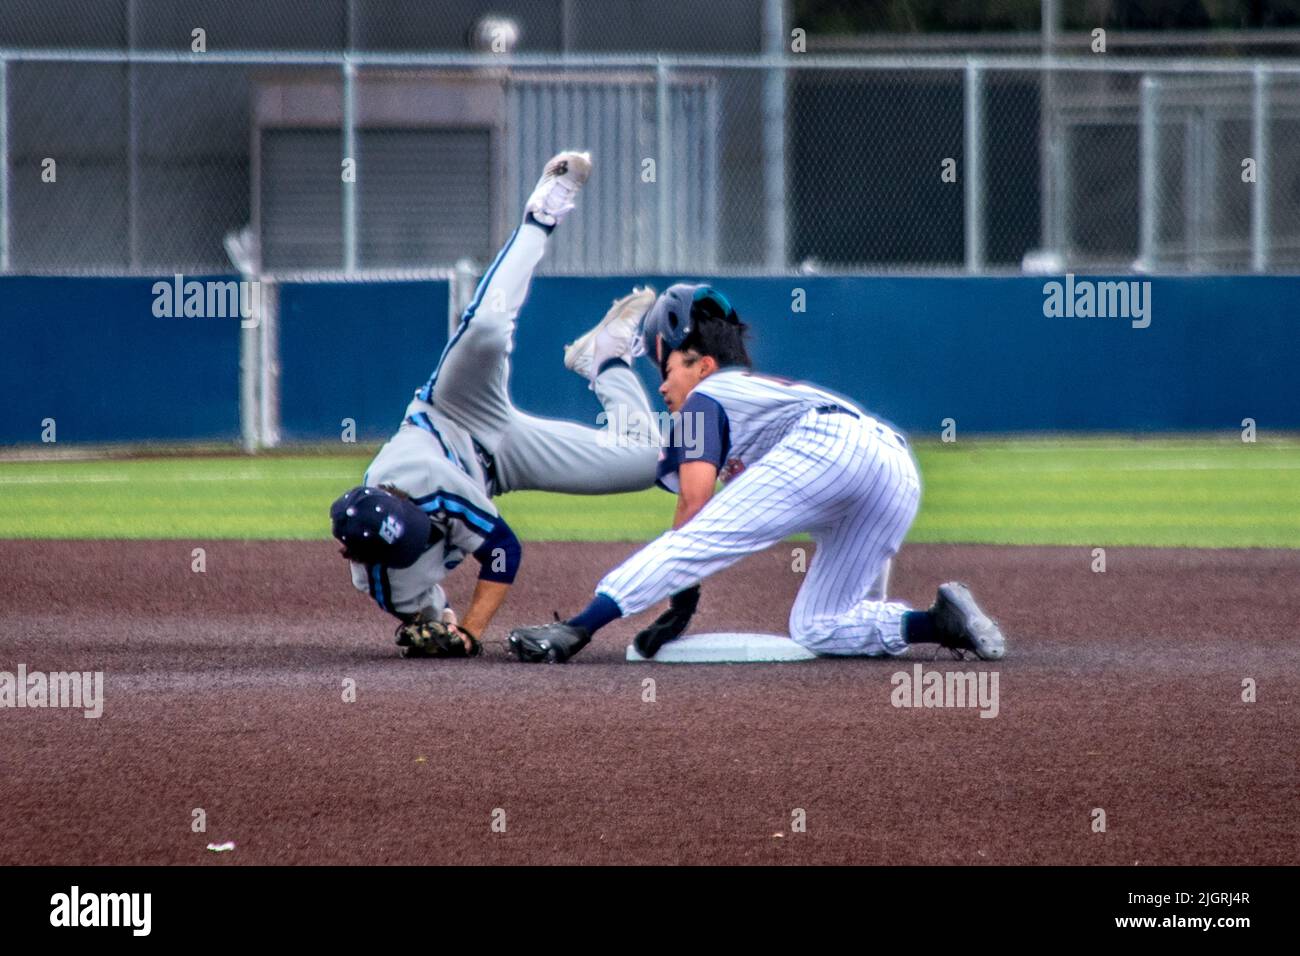 Ein College-Baseballspieler rutscht beim Versuch, zu stehlen, in die zweite Basis, während der zweite Basisspieler den Ball in seinem Baseballhandschuh hält, während er sich überrollt Stockfoto